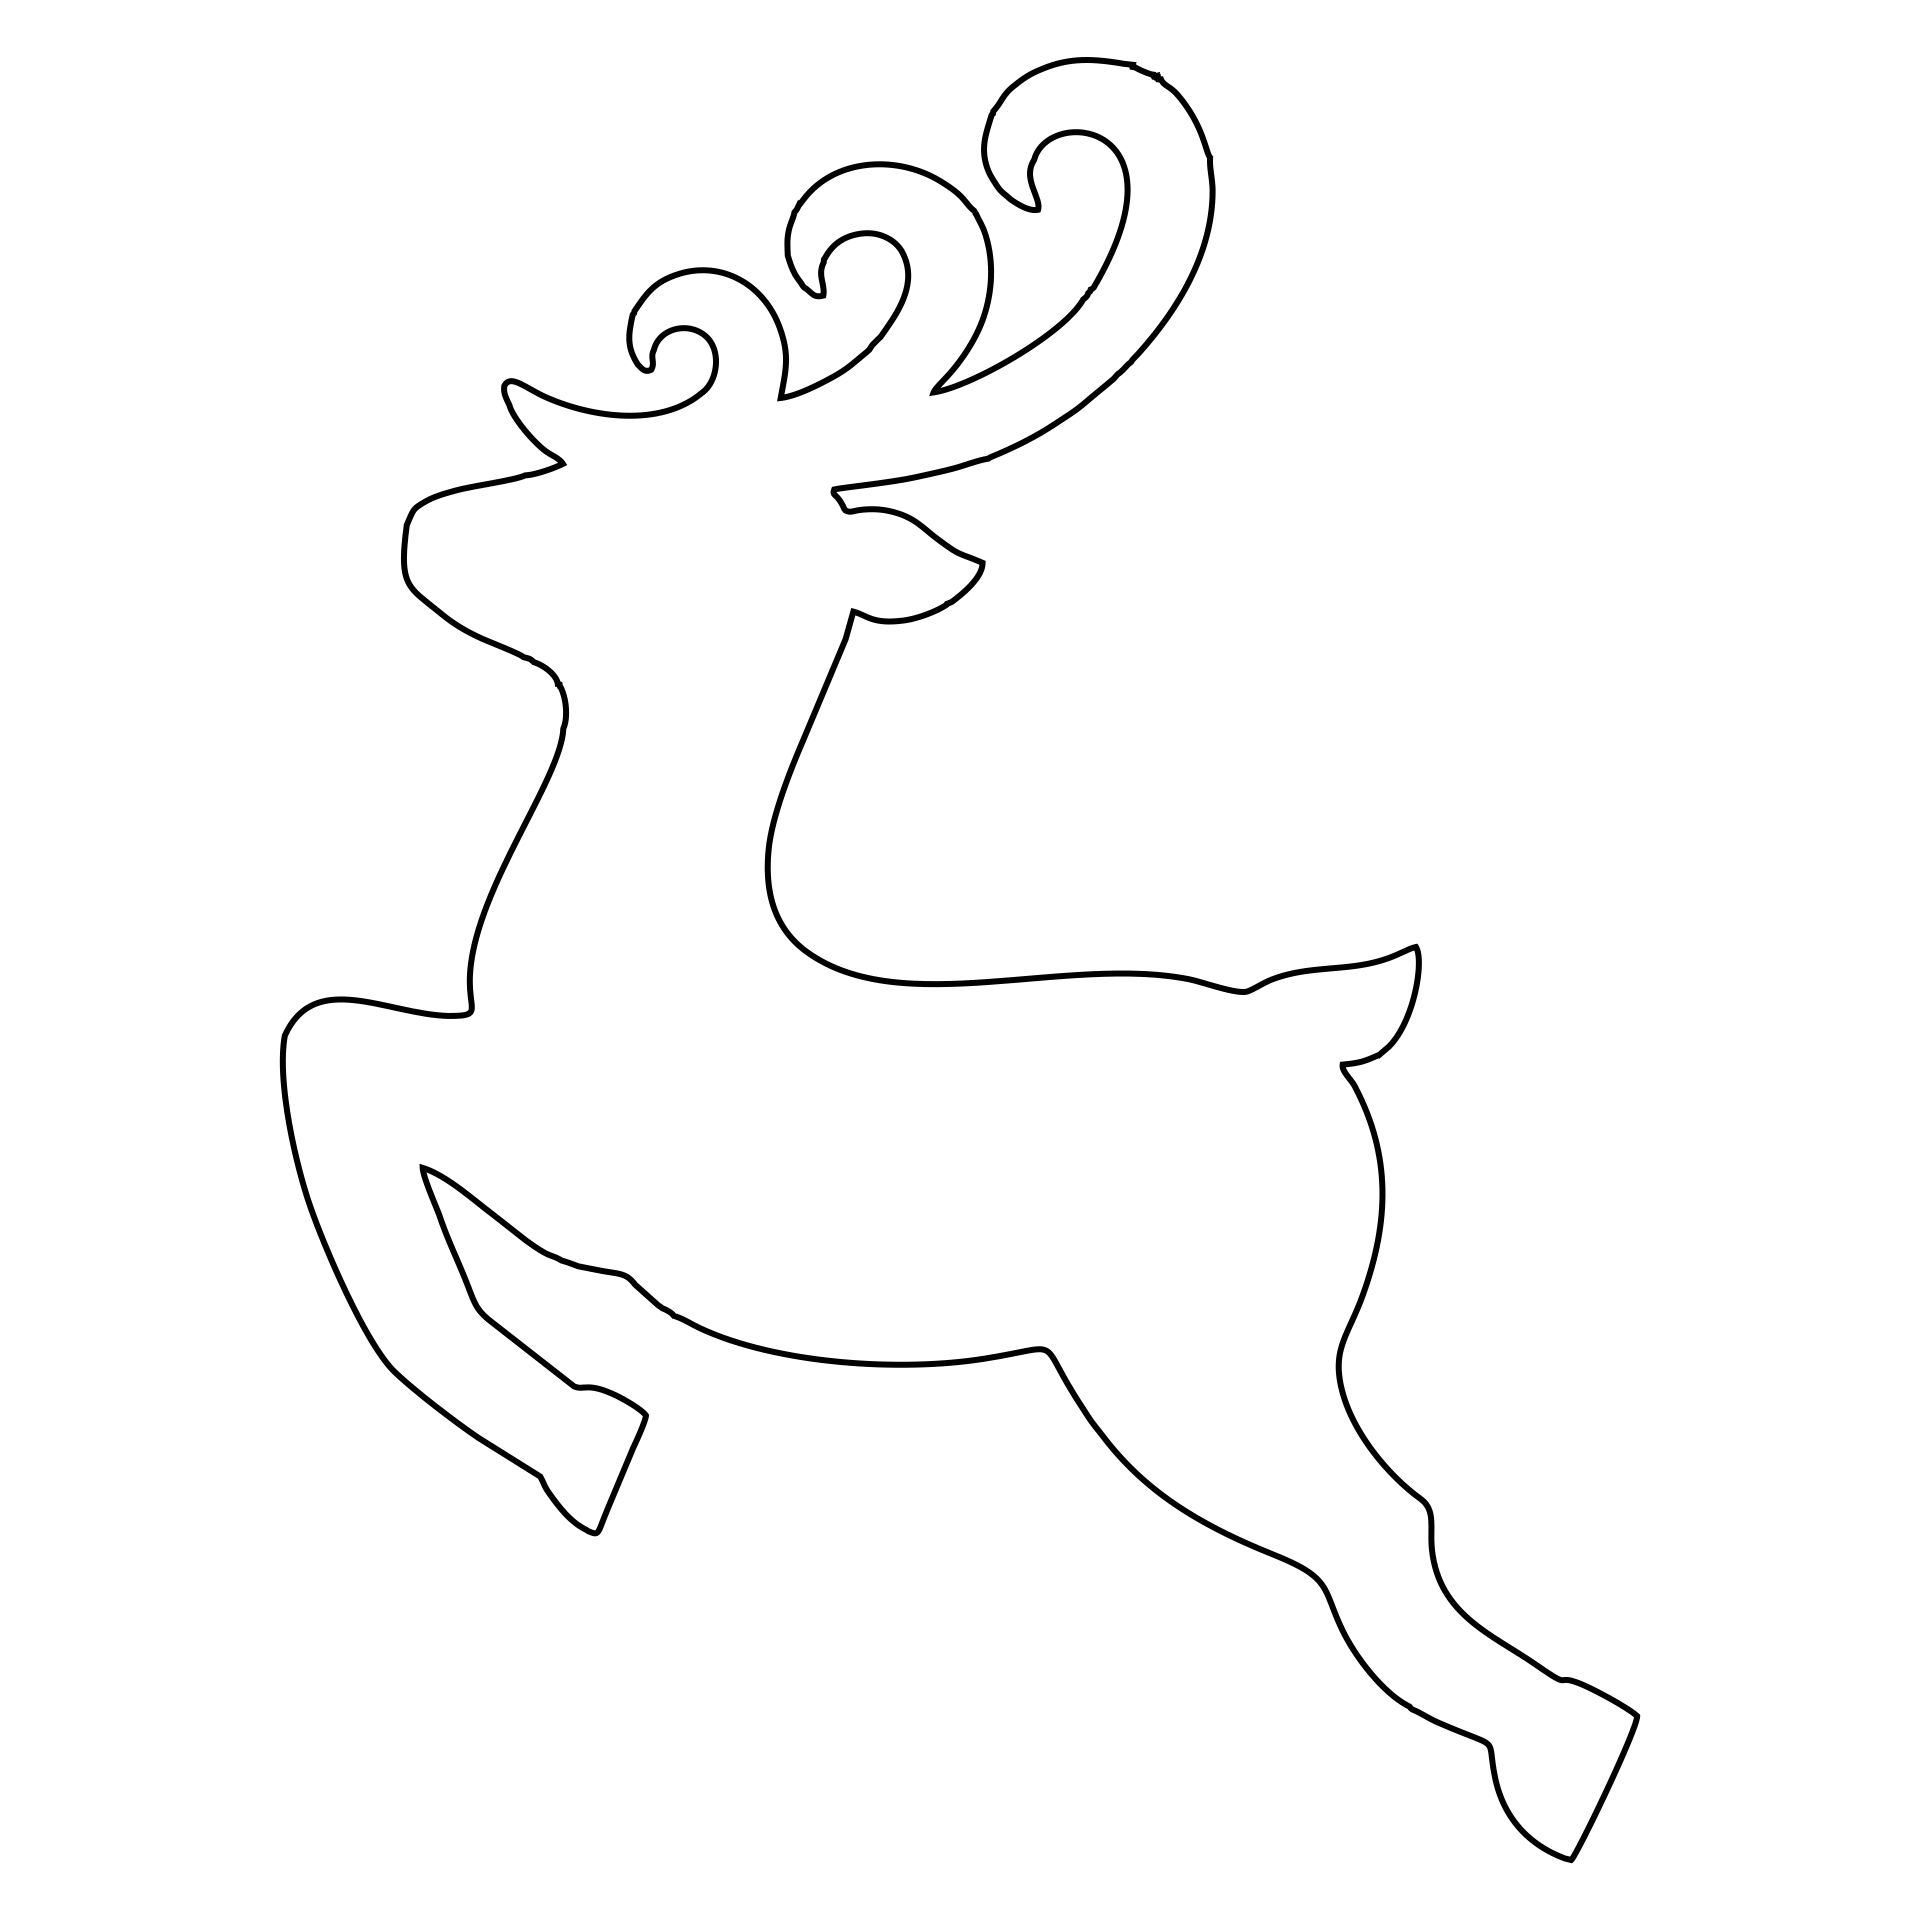 Printable Reindeer Patterns_89227